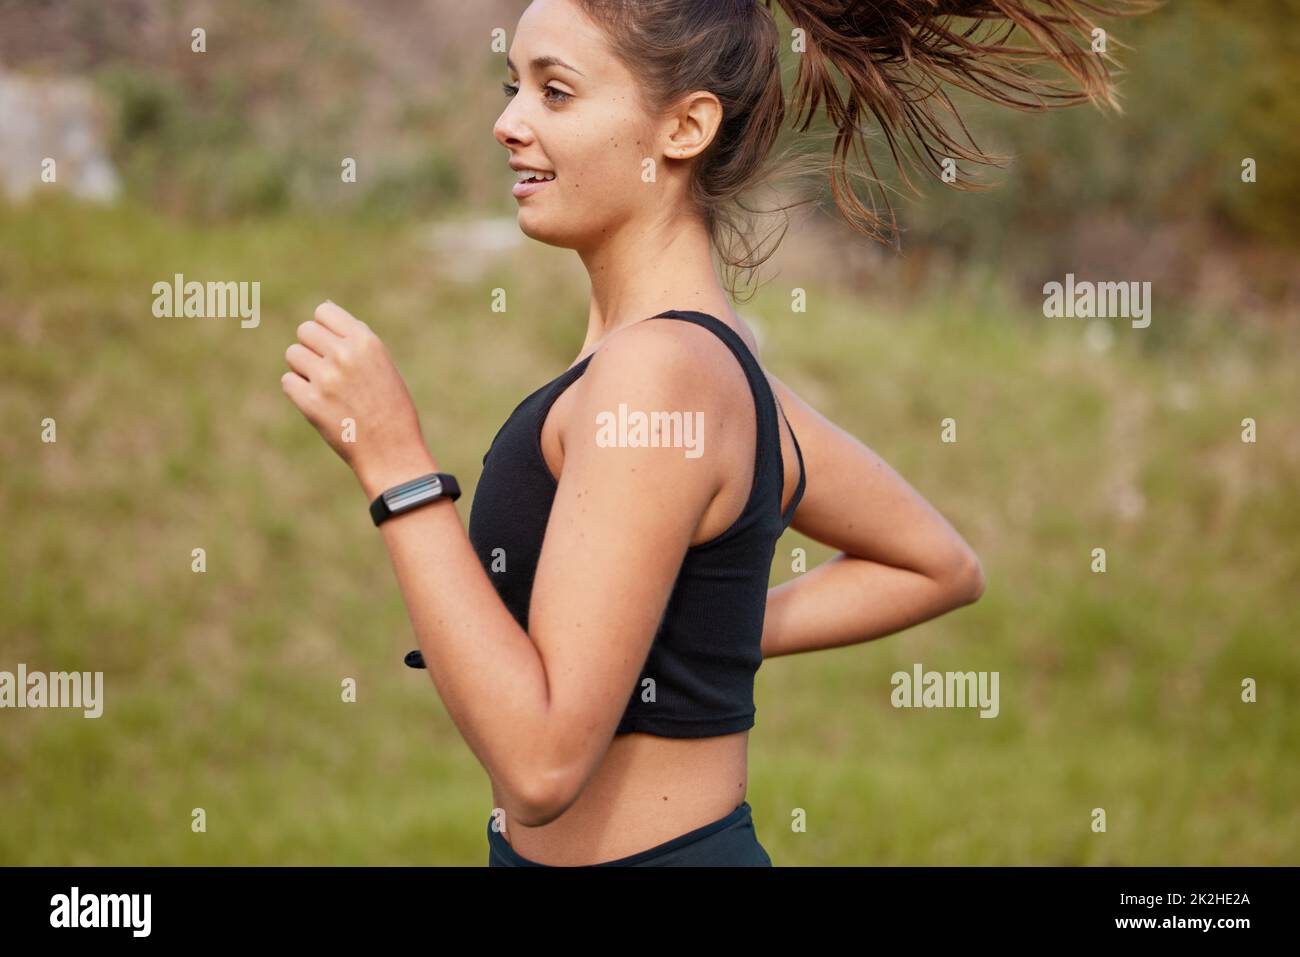 Sprint direkt in Richtung eines gesünderen Lebensstils. Aufnahme einer sportlichen jungen Frau, die im Freien läuft. Stockfoto